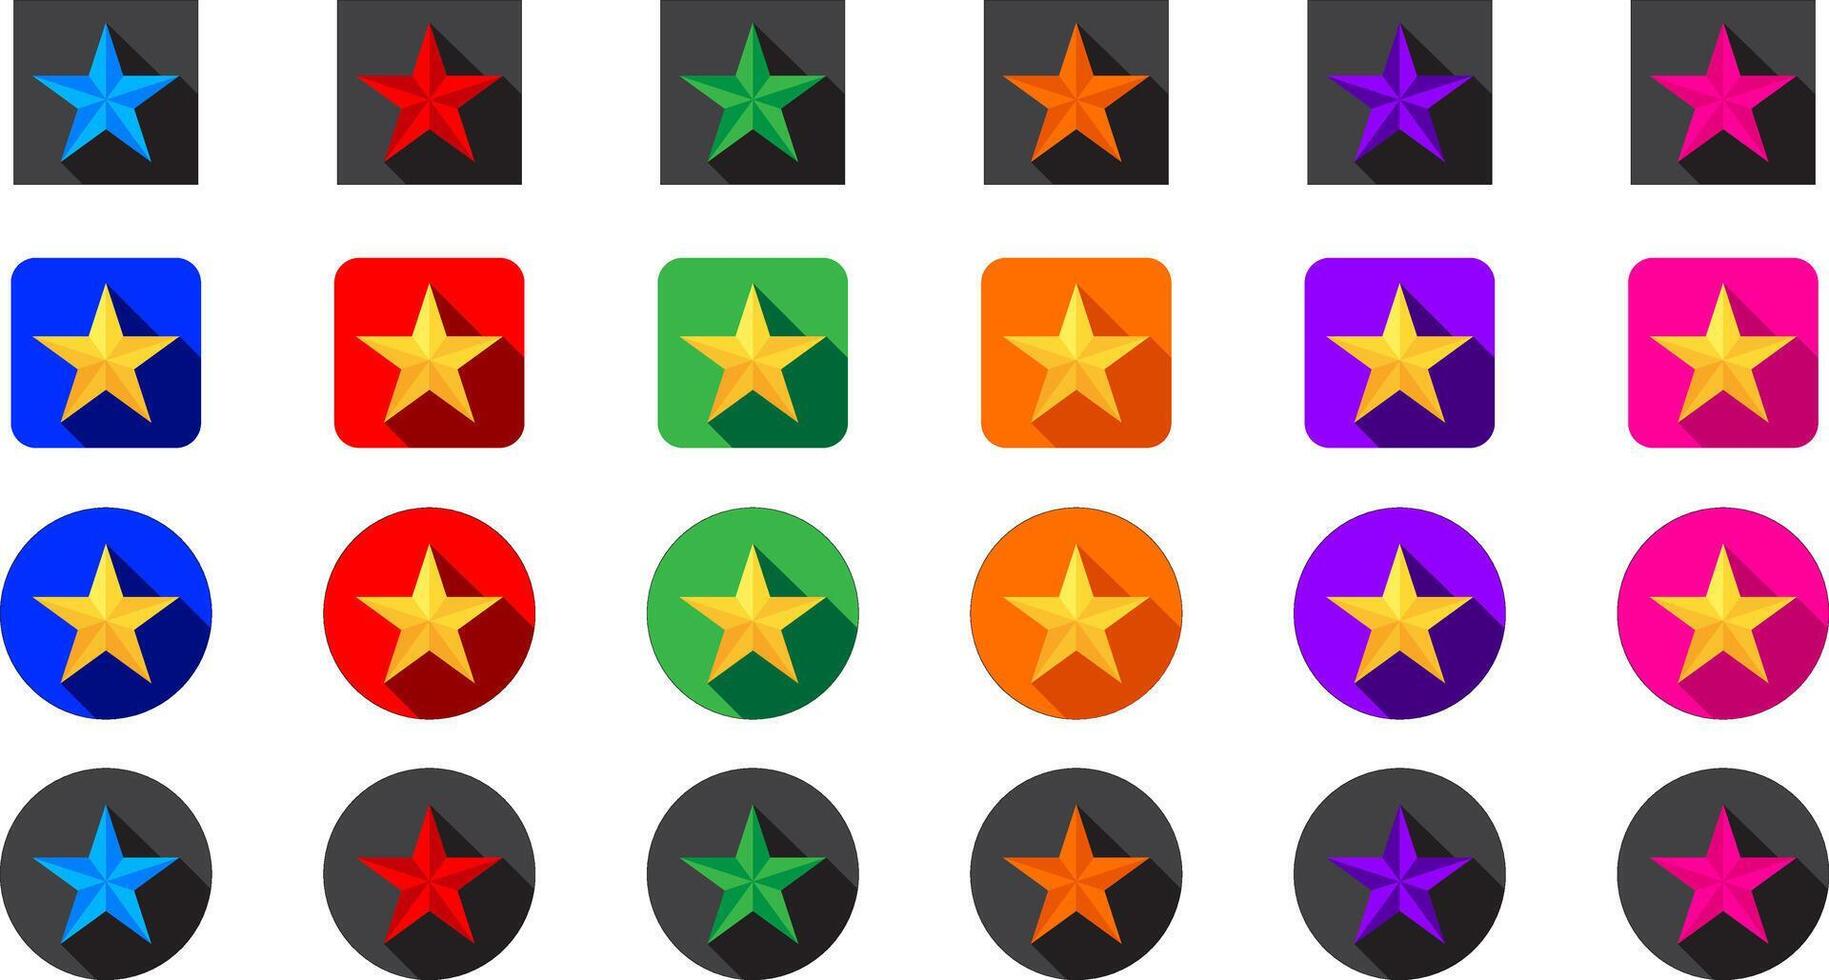 oro y vistoso estrella en circulo y rectángulo en azul, rojo, verde, naranja, púrpura, y rosado colores con oscuro sombra vector